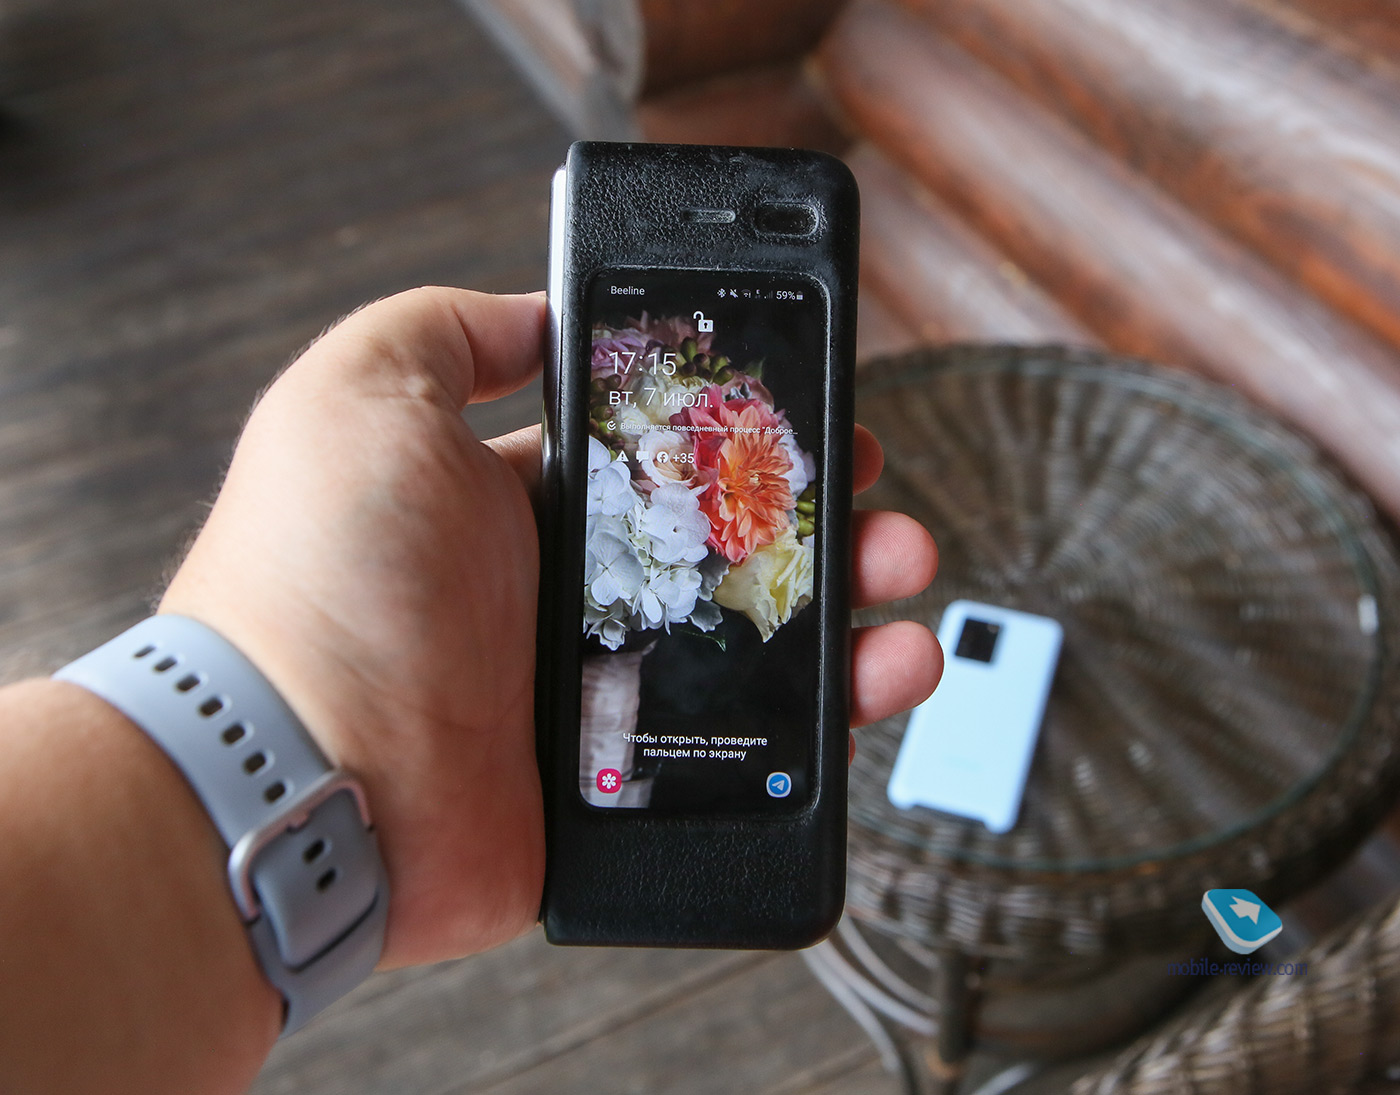 Galaxy Z Fold2 – взросление смартфона с гибким экраном, версия номер два